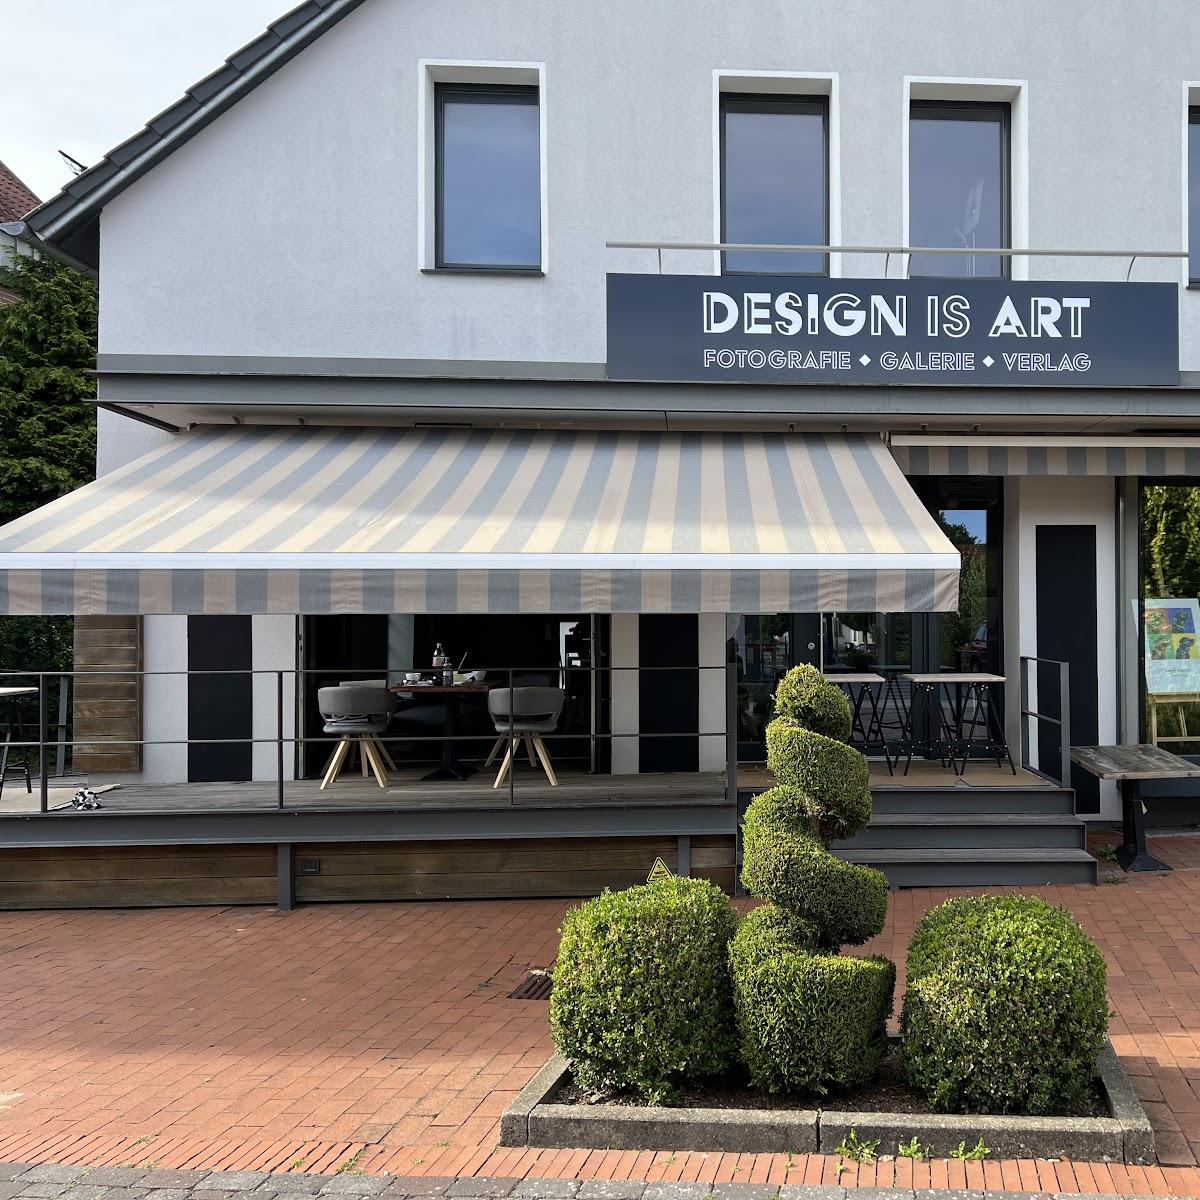 Restaurant "DESIGN IS ART Fotografie,Galerie und Restaurant (ALEX FRIEBE)" in Enger